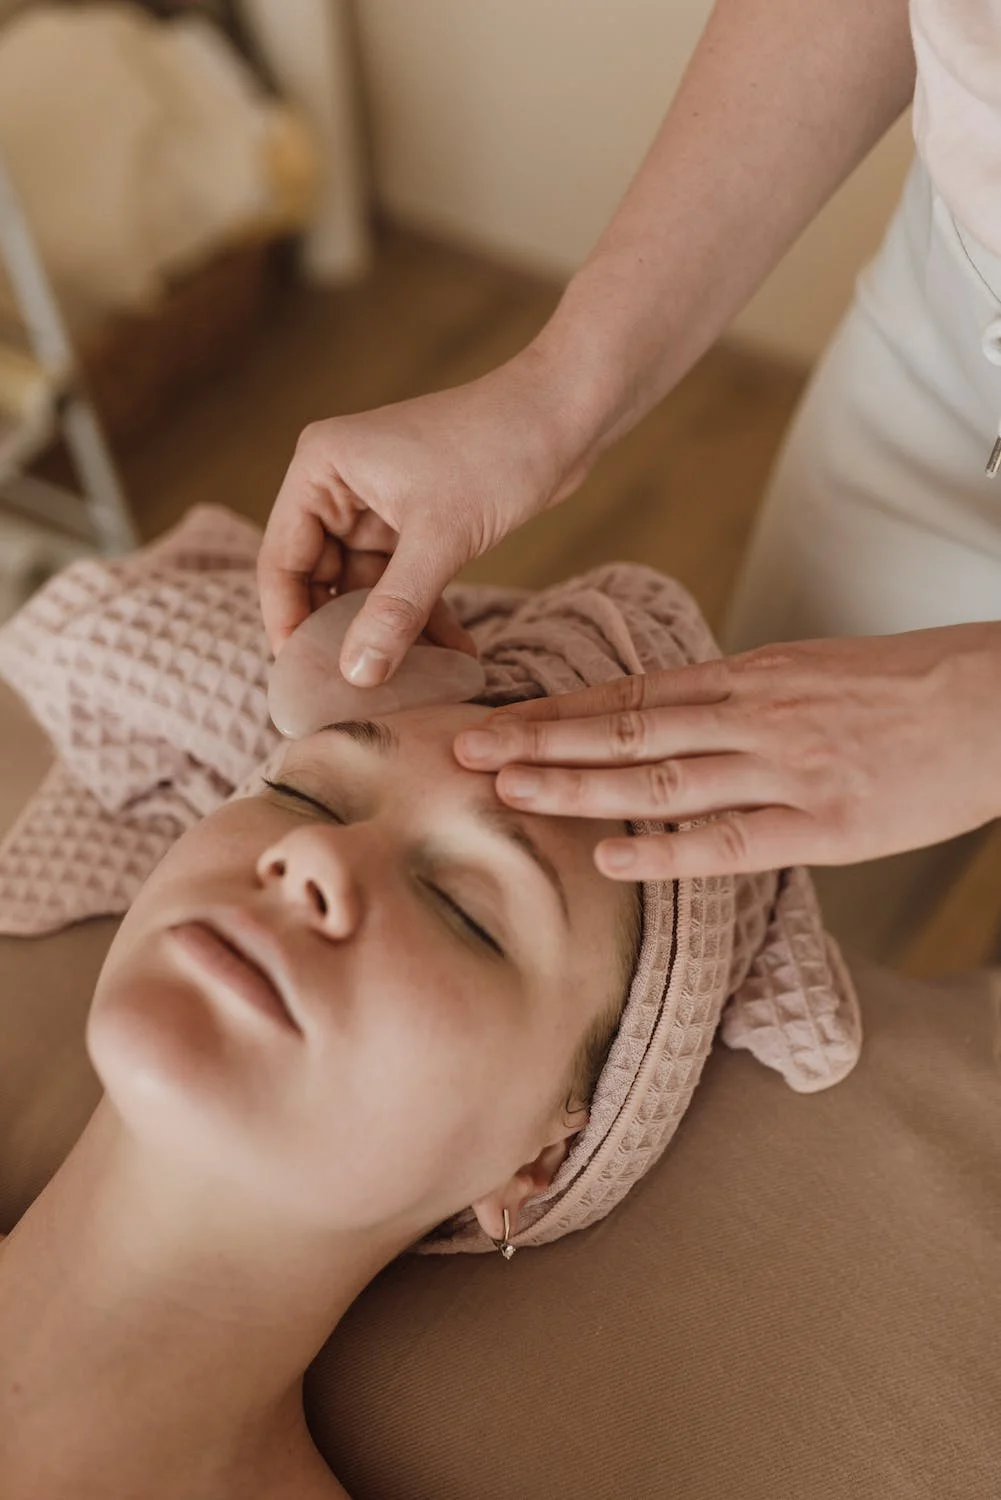 Massage mặt với đá Gua Sha mang lại nhiều lợi ích trẻ hoá.